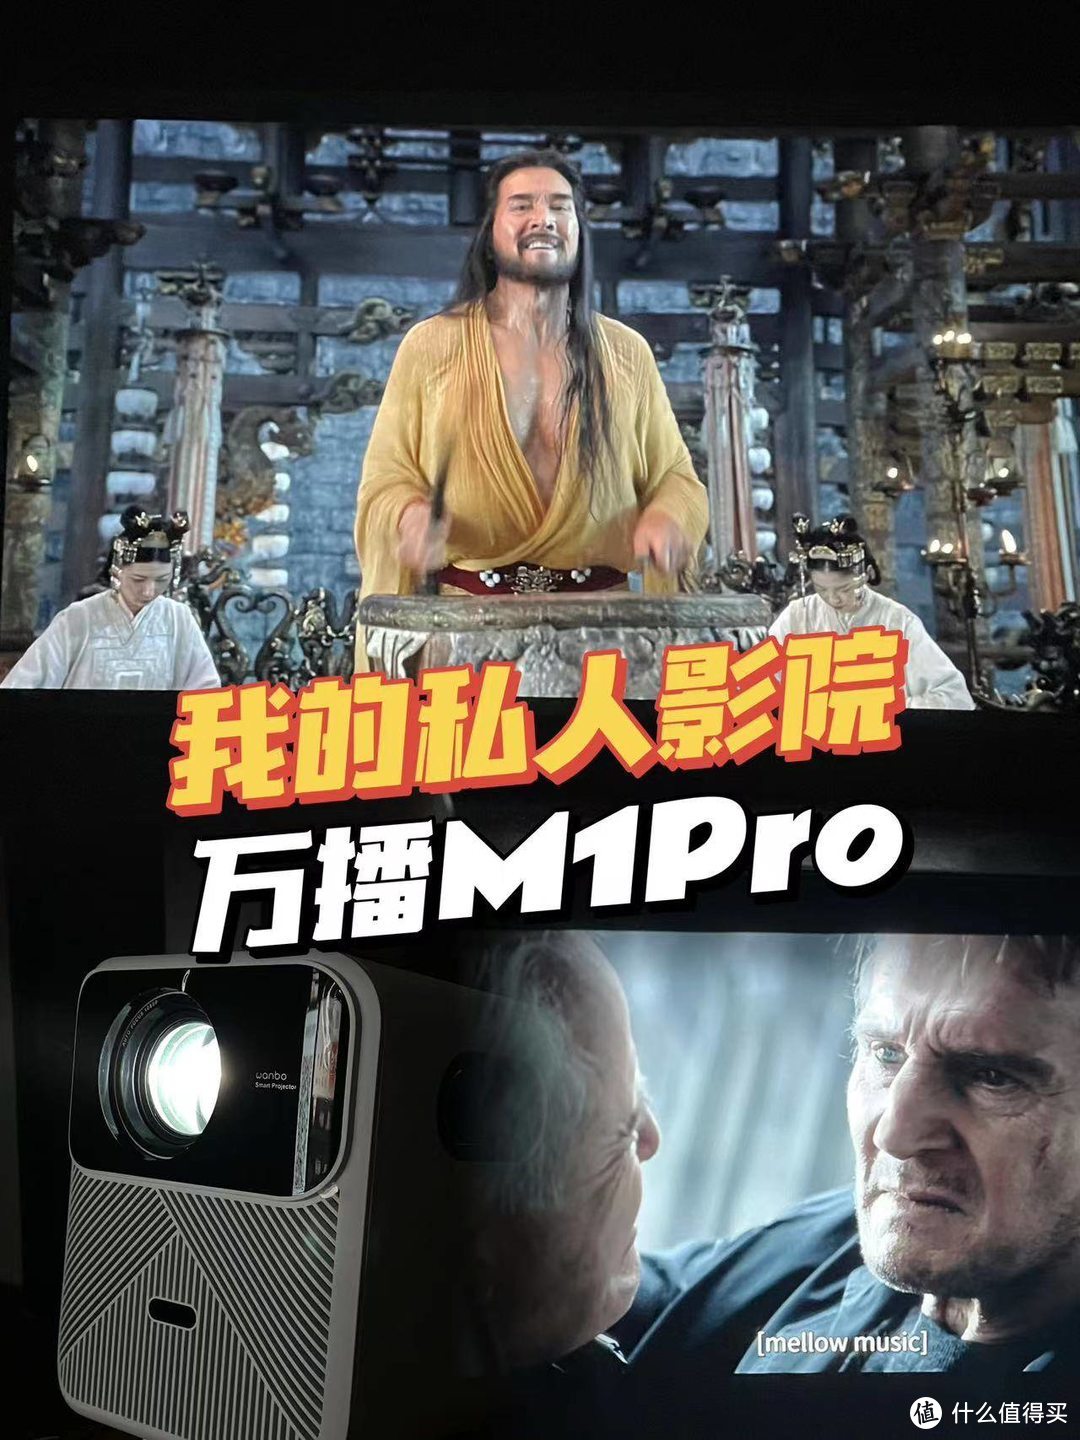 千元级超高性价比的投影仪——万播M1Pro，二人世界的私人影院